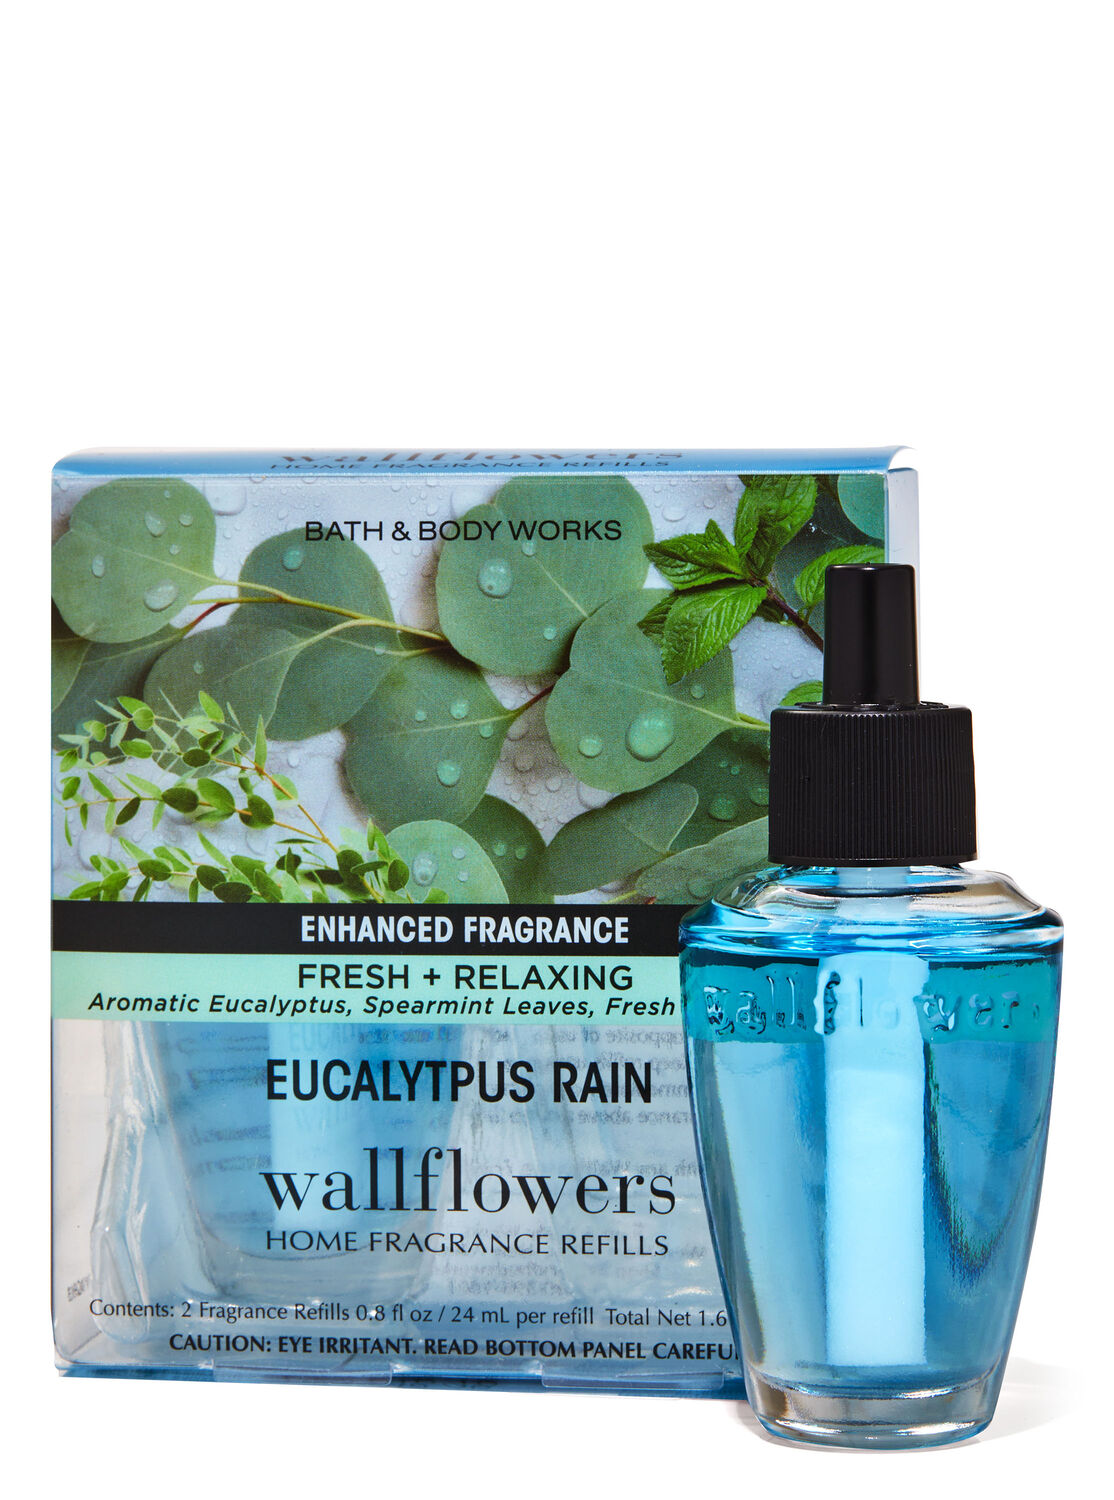 Eucalyptus Rain Bath & Body Works Candle Wax Melts BBW Wax Melts